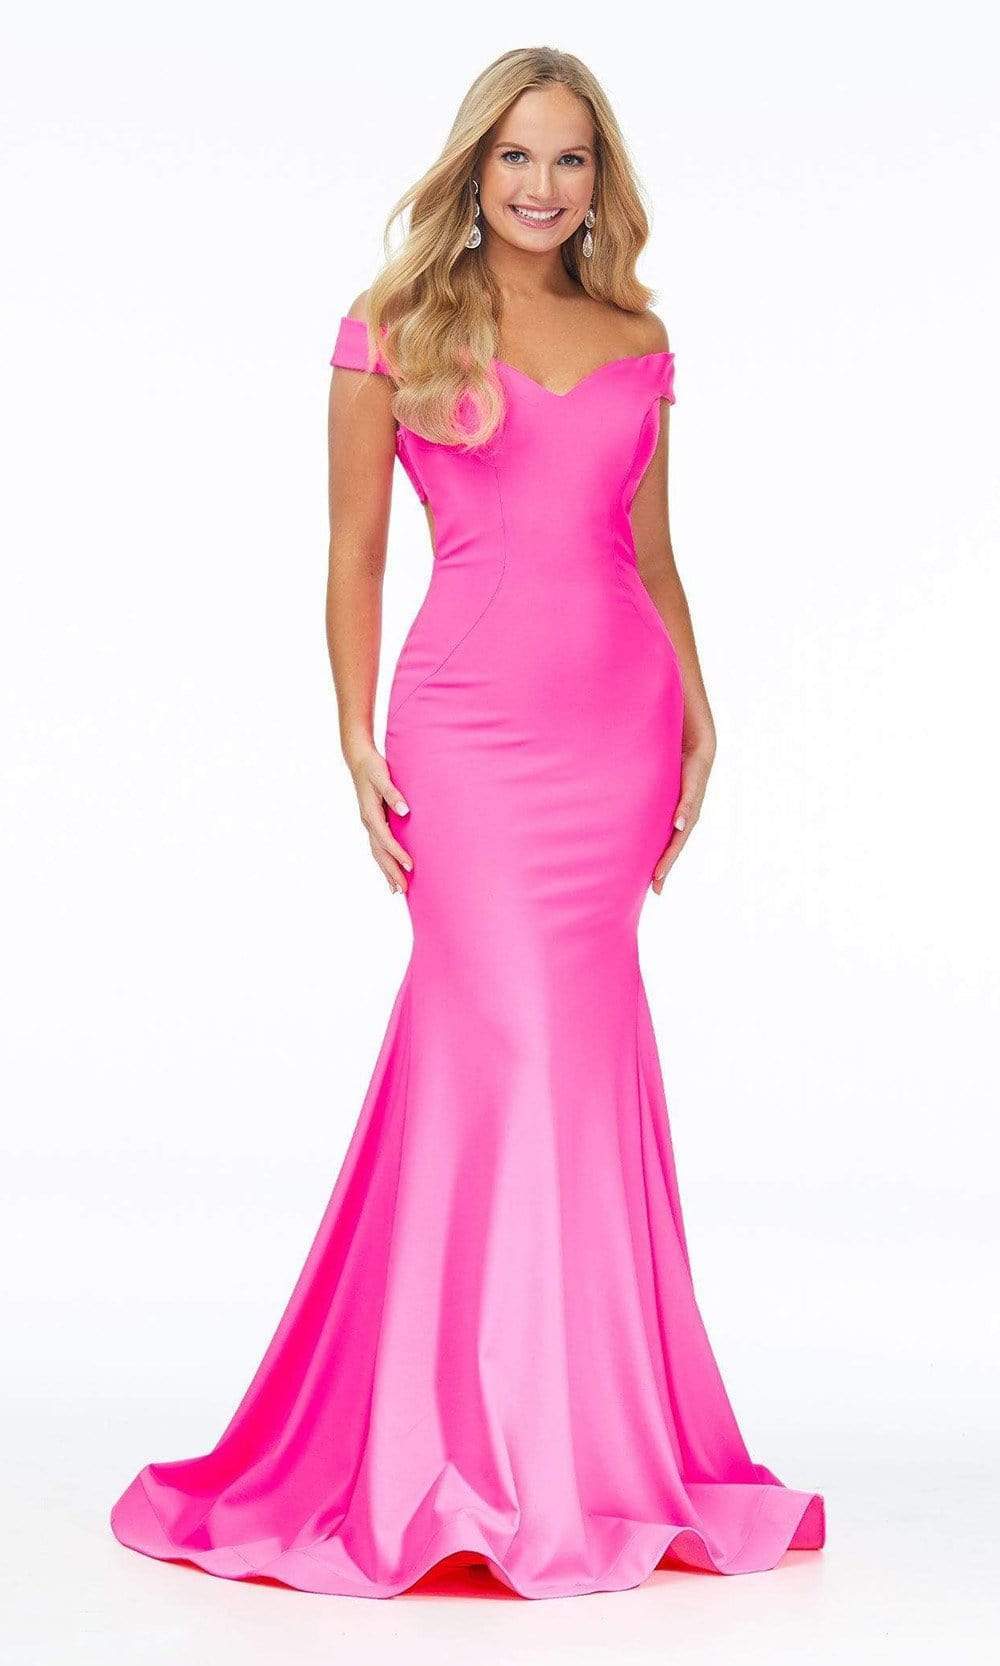 Ashley Lauren - 11025 Off Shoulder Scuba Mermaid Gown Pageant Dresses 0 / Hot Pink